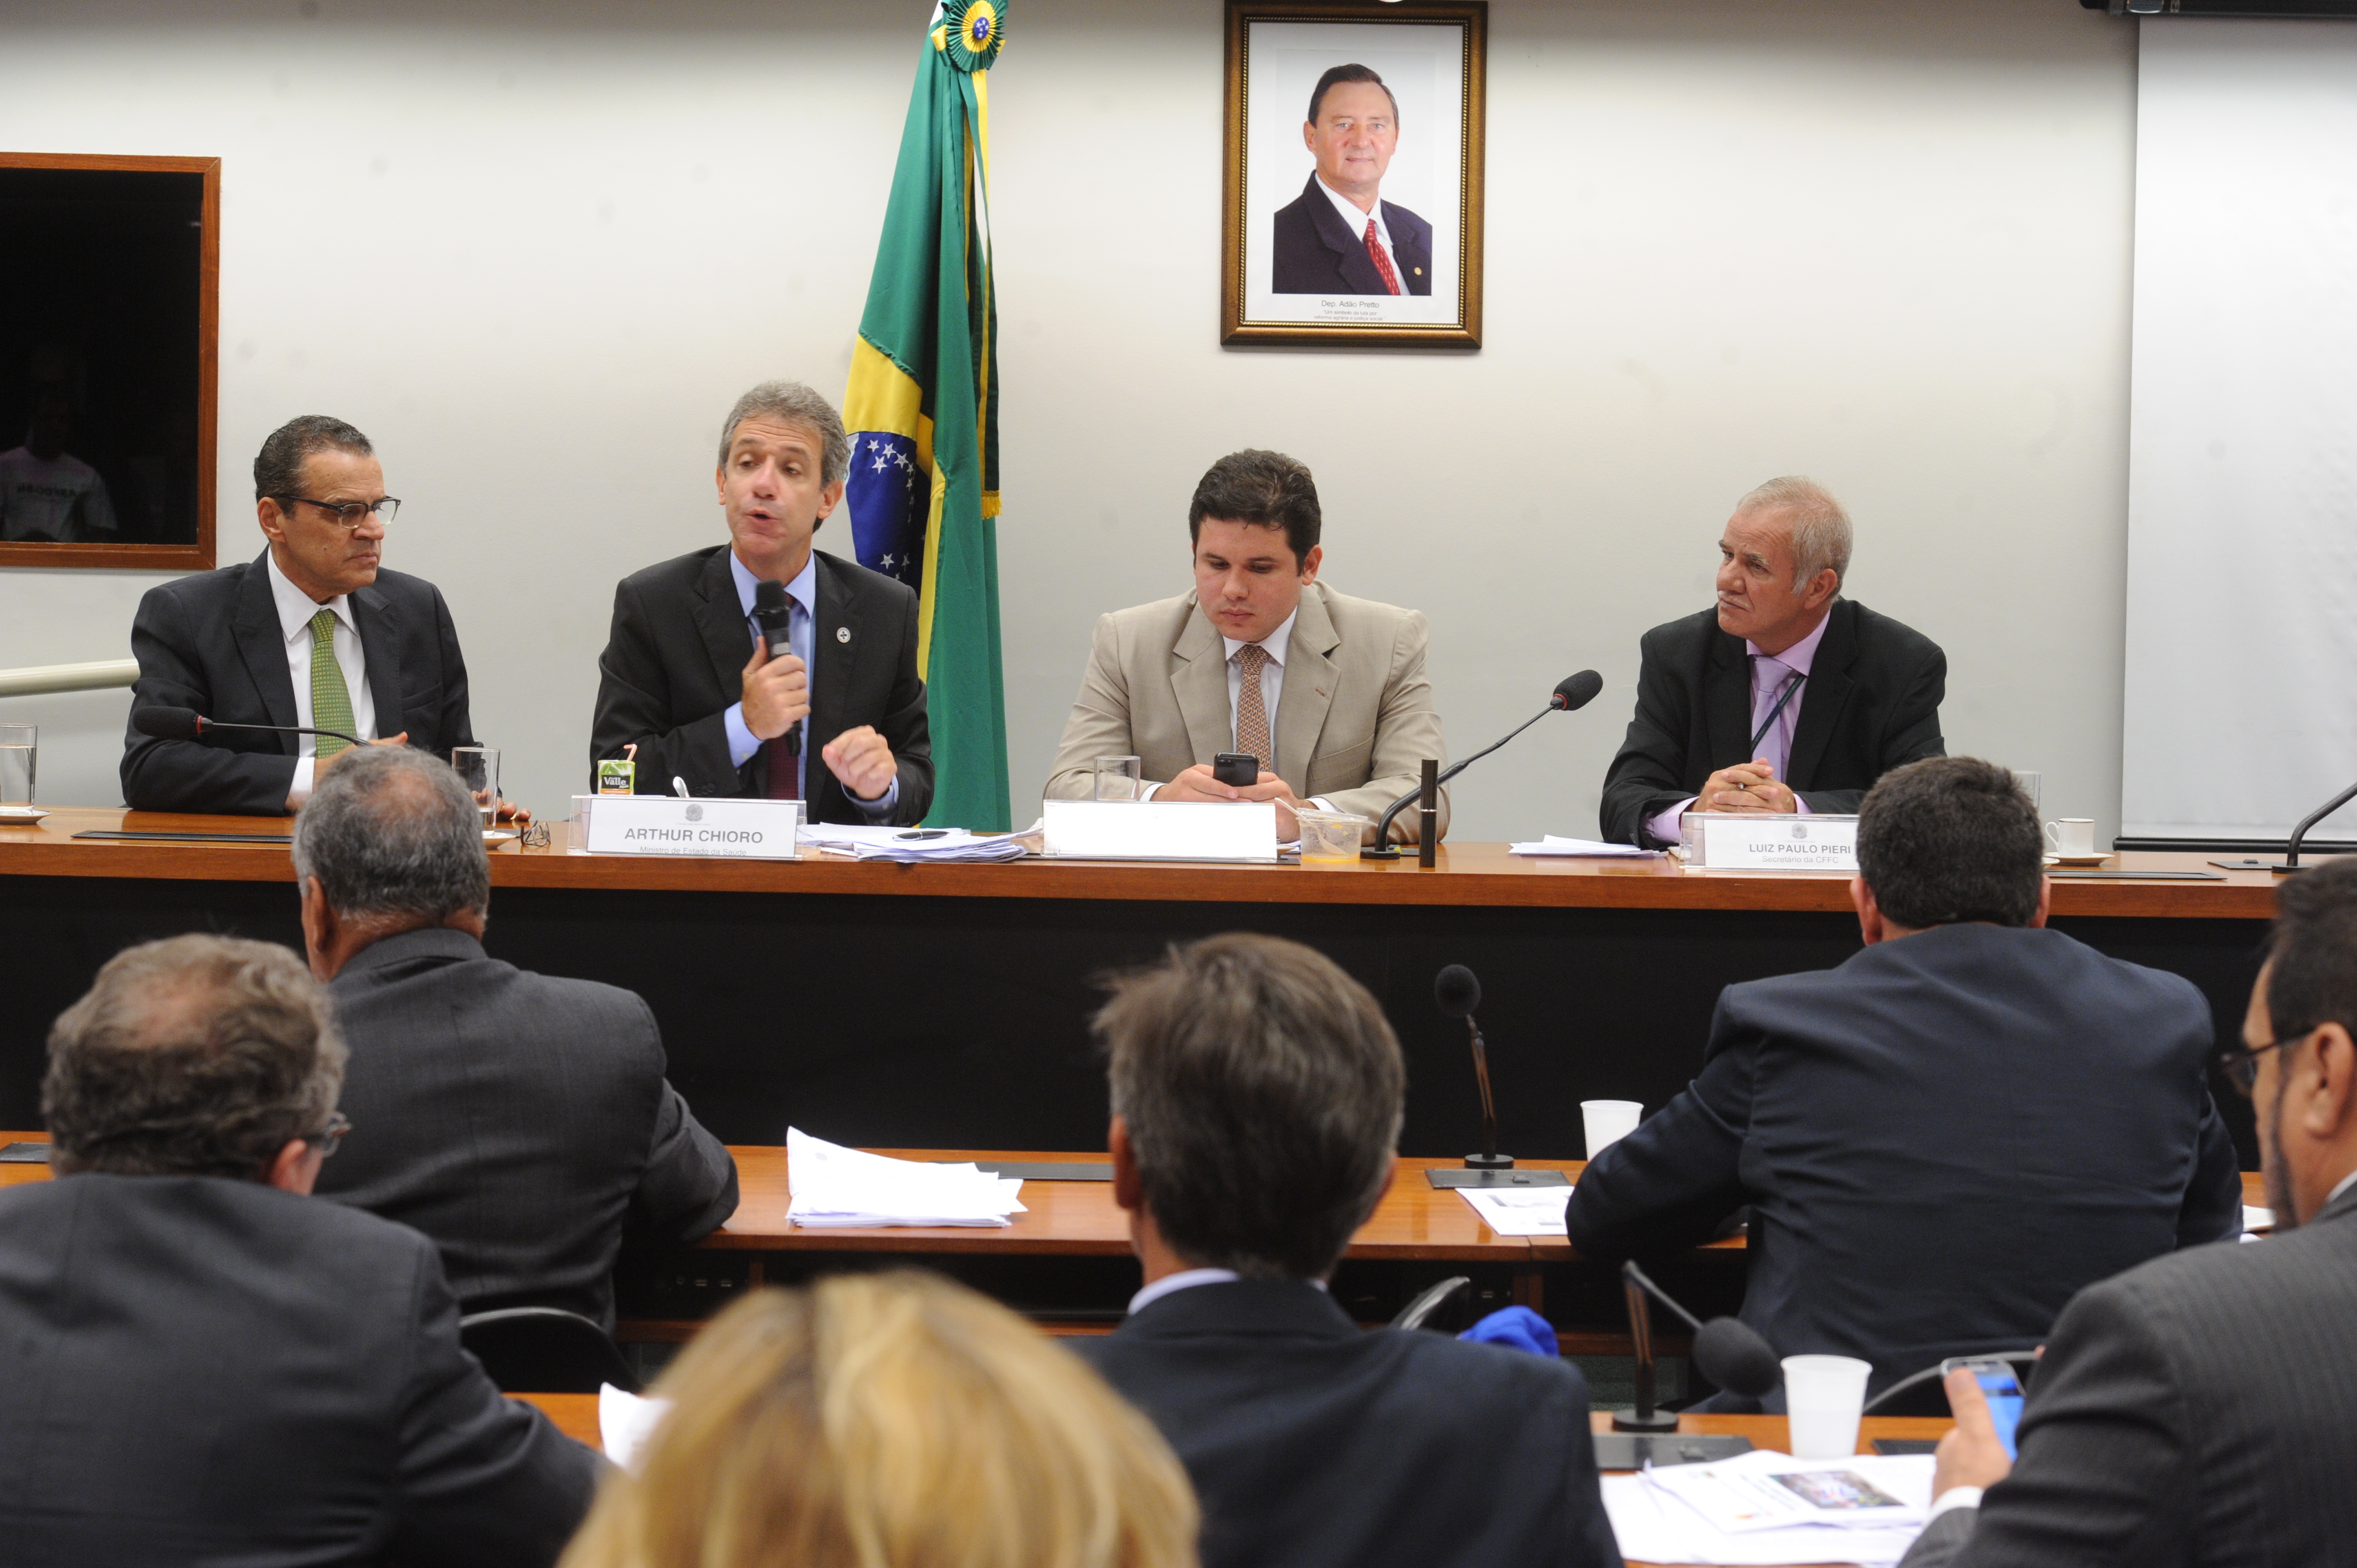 Para Alves, presença do ministro em comissão “engrandece o Legislativo”